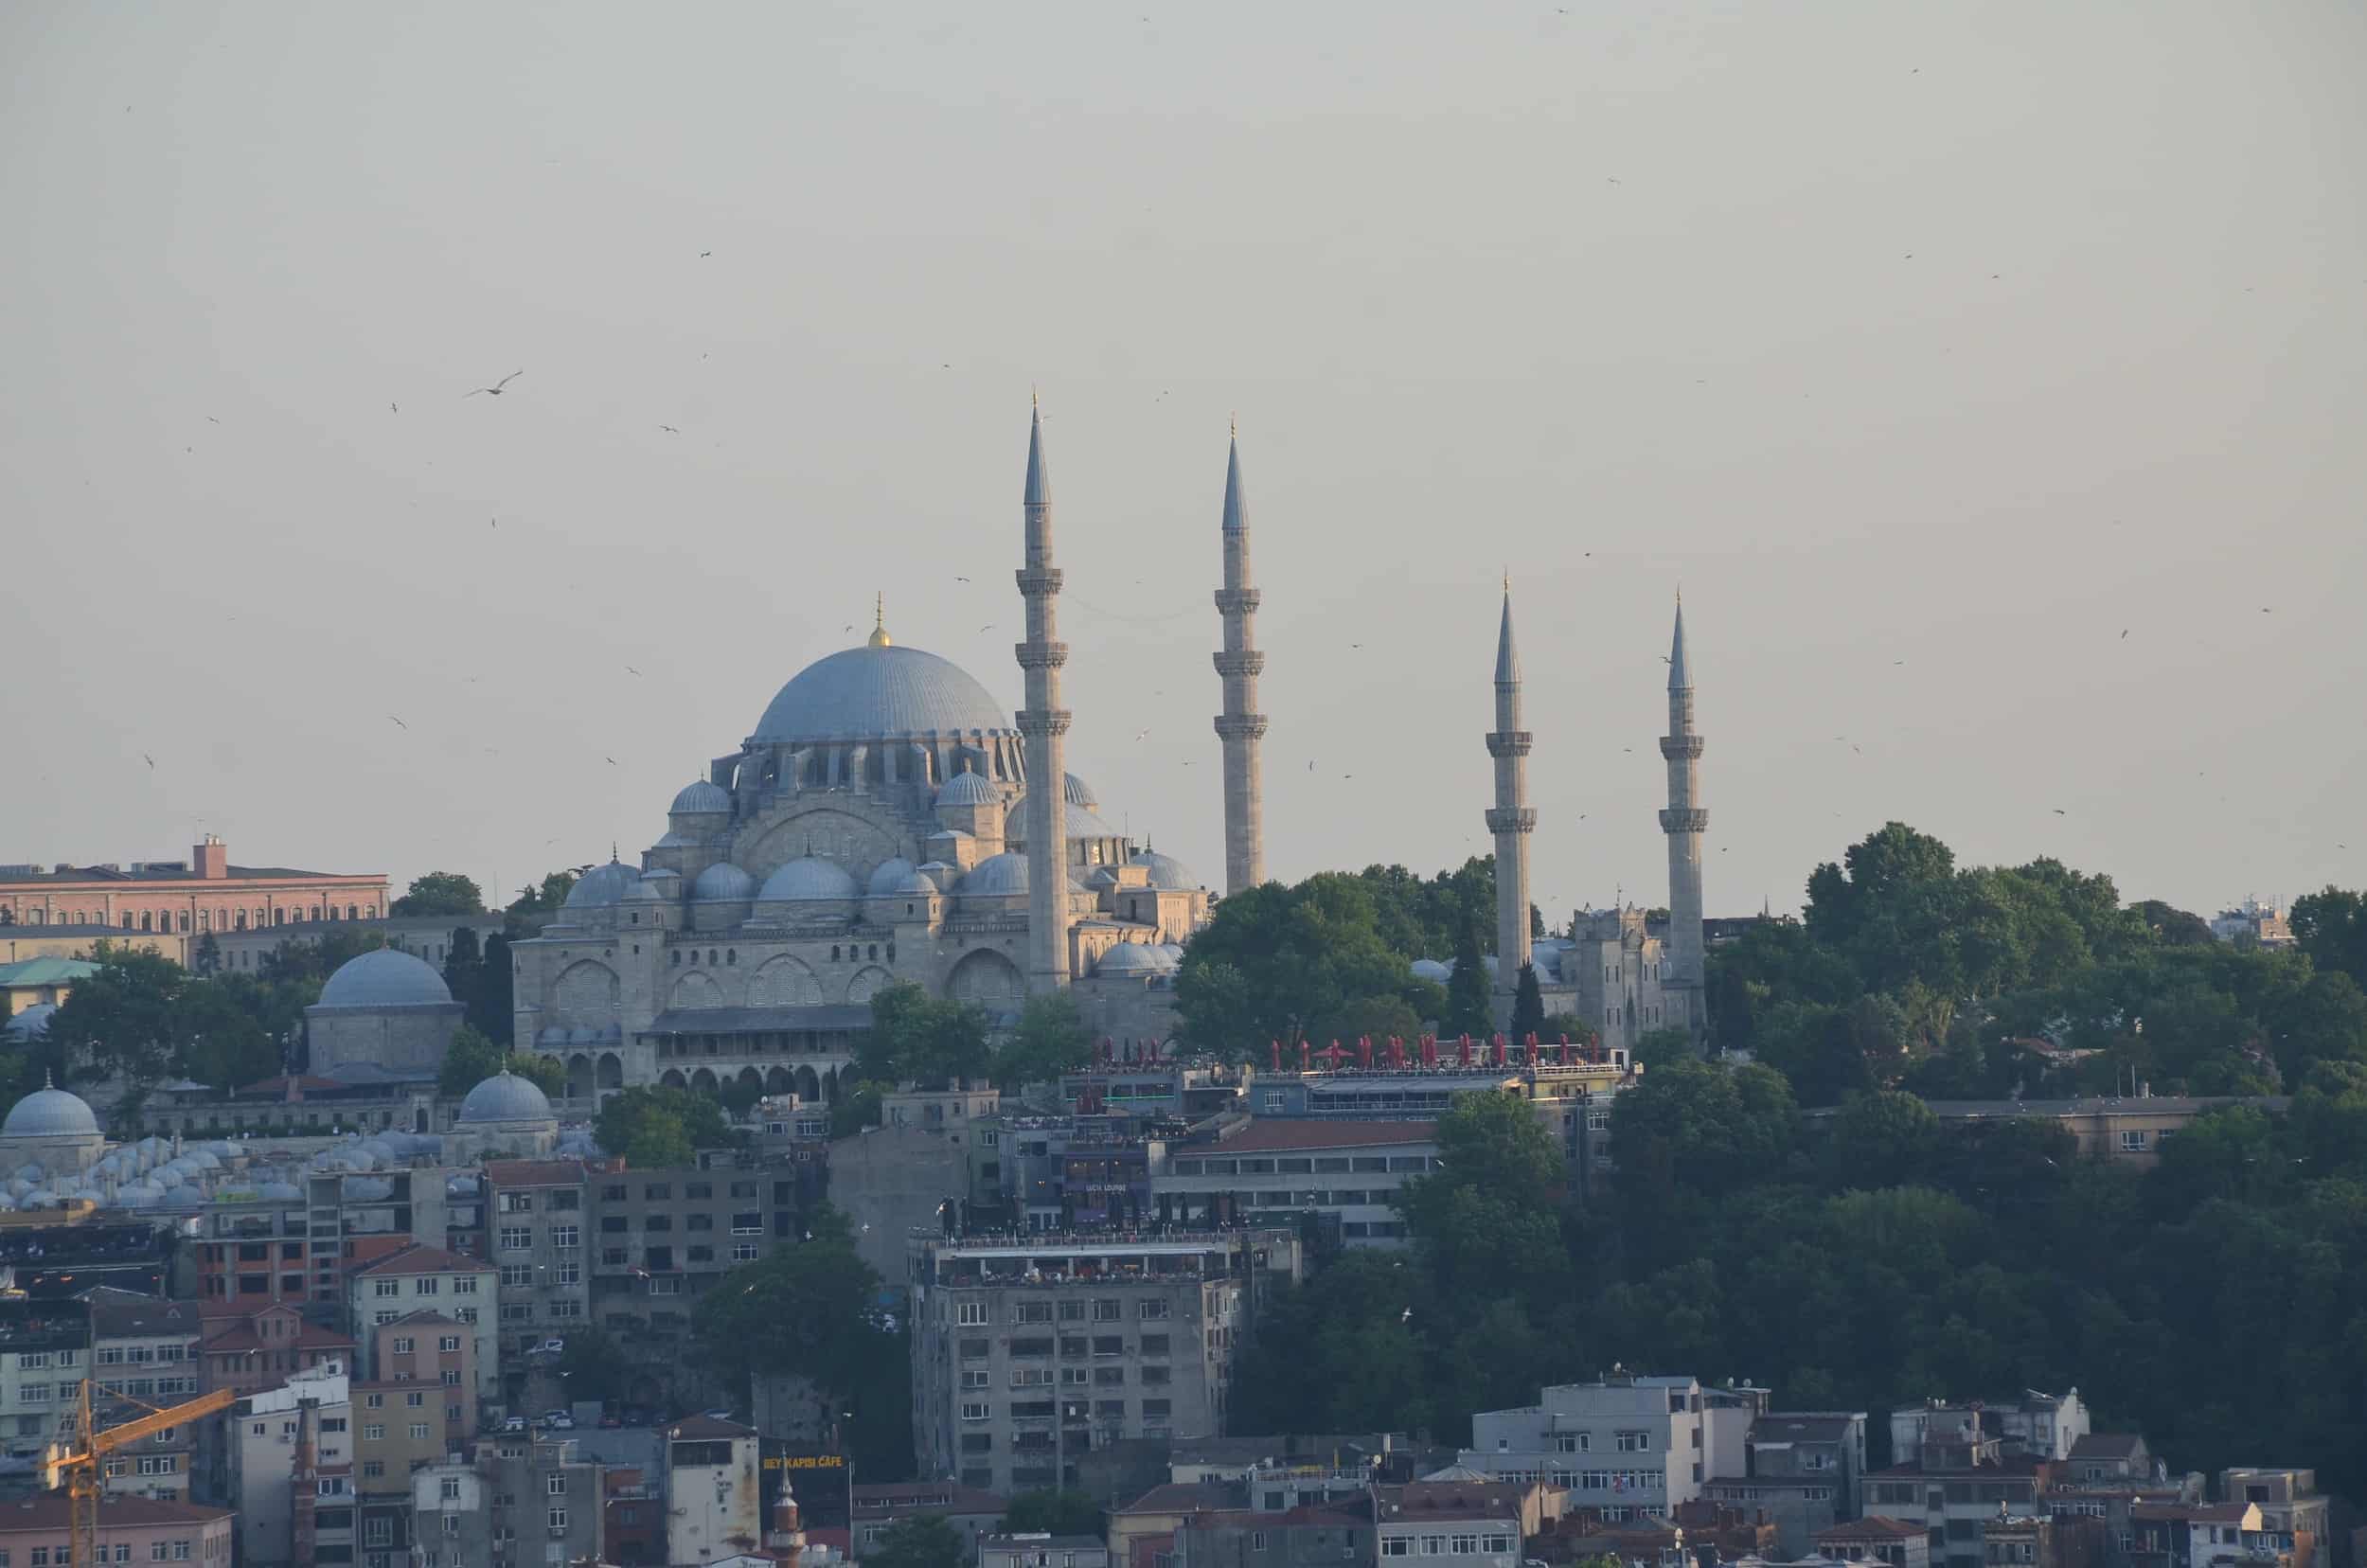 Süleymaniye Mosque in Istanbul, Turkey